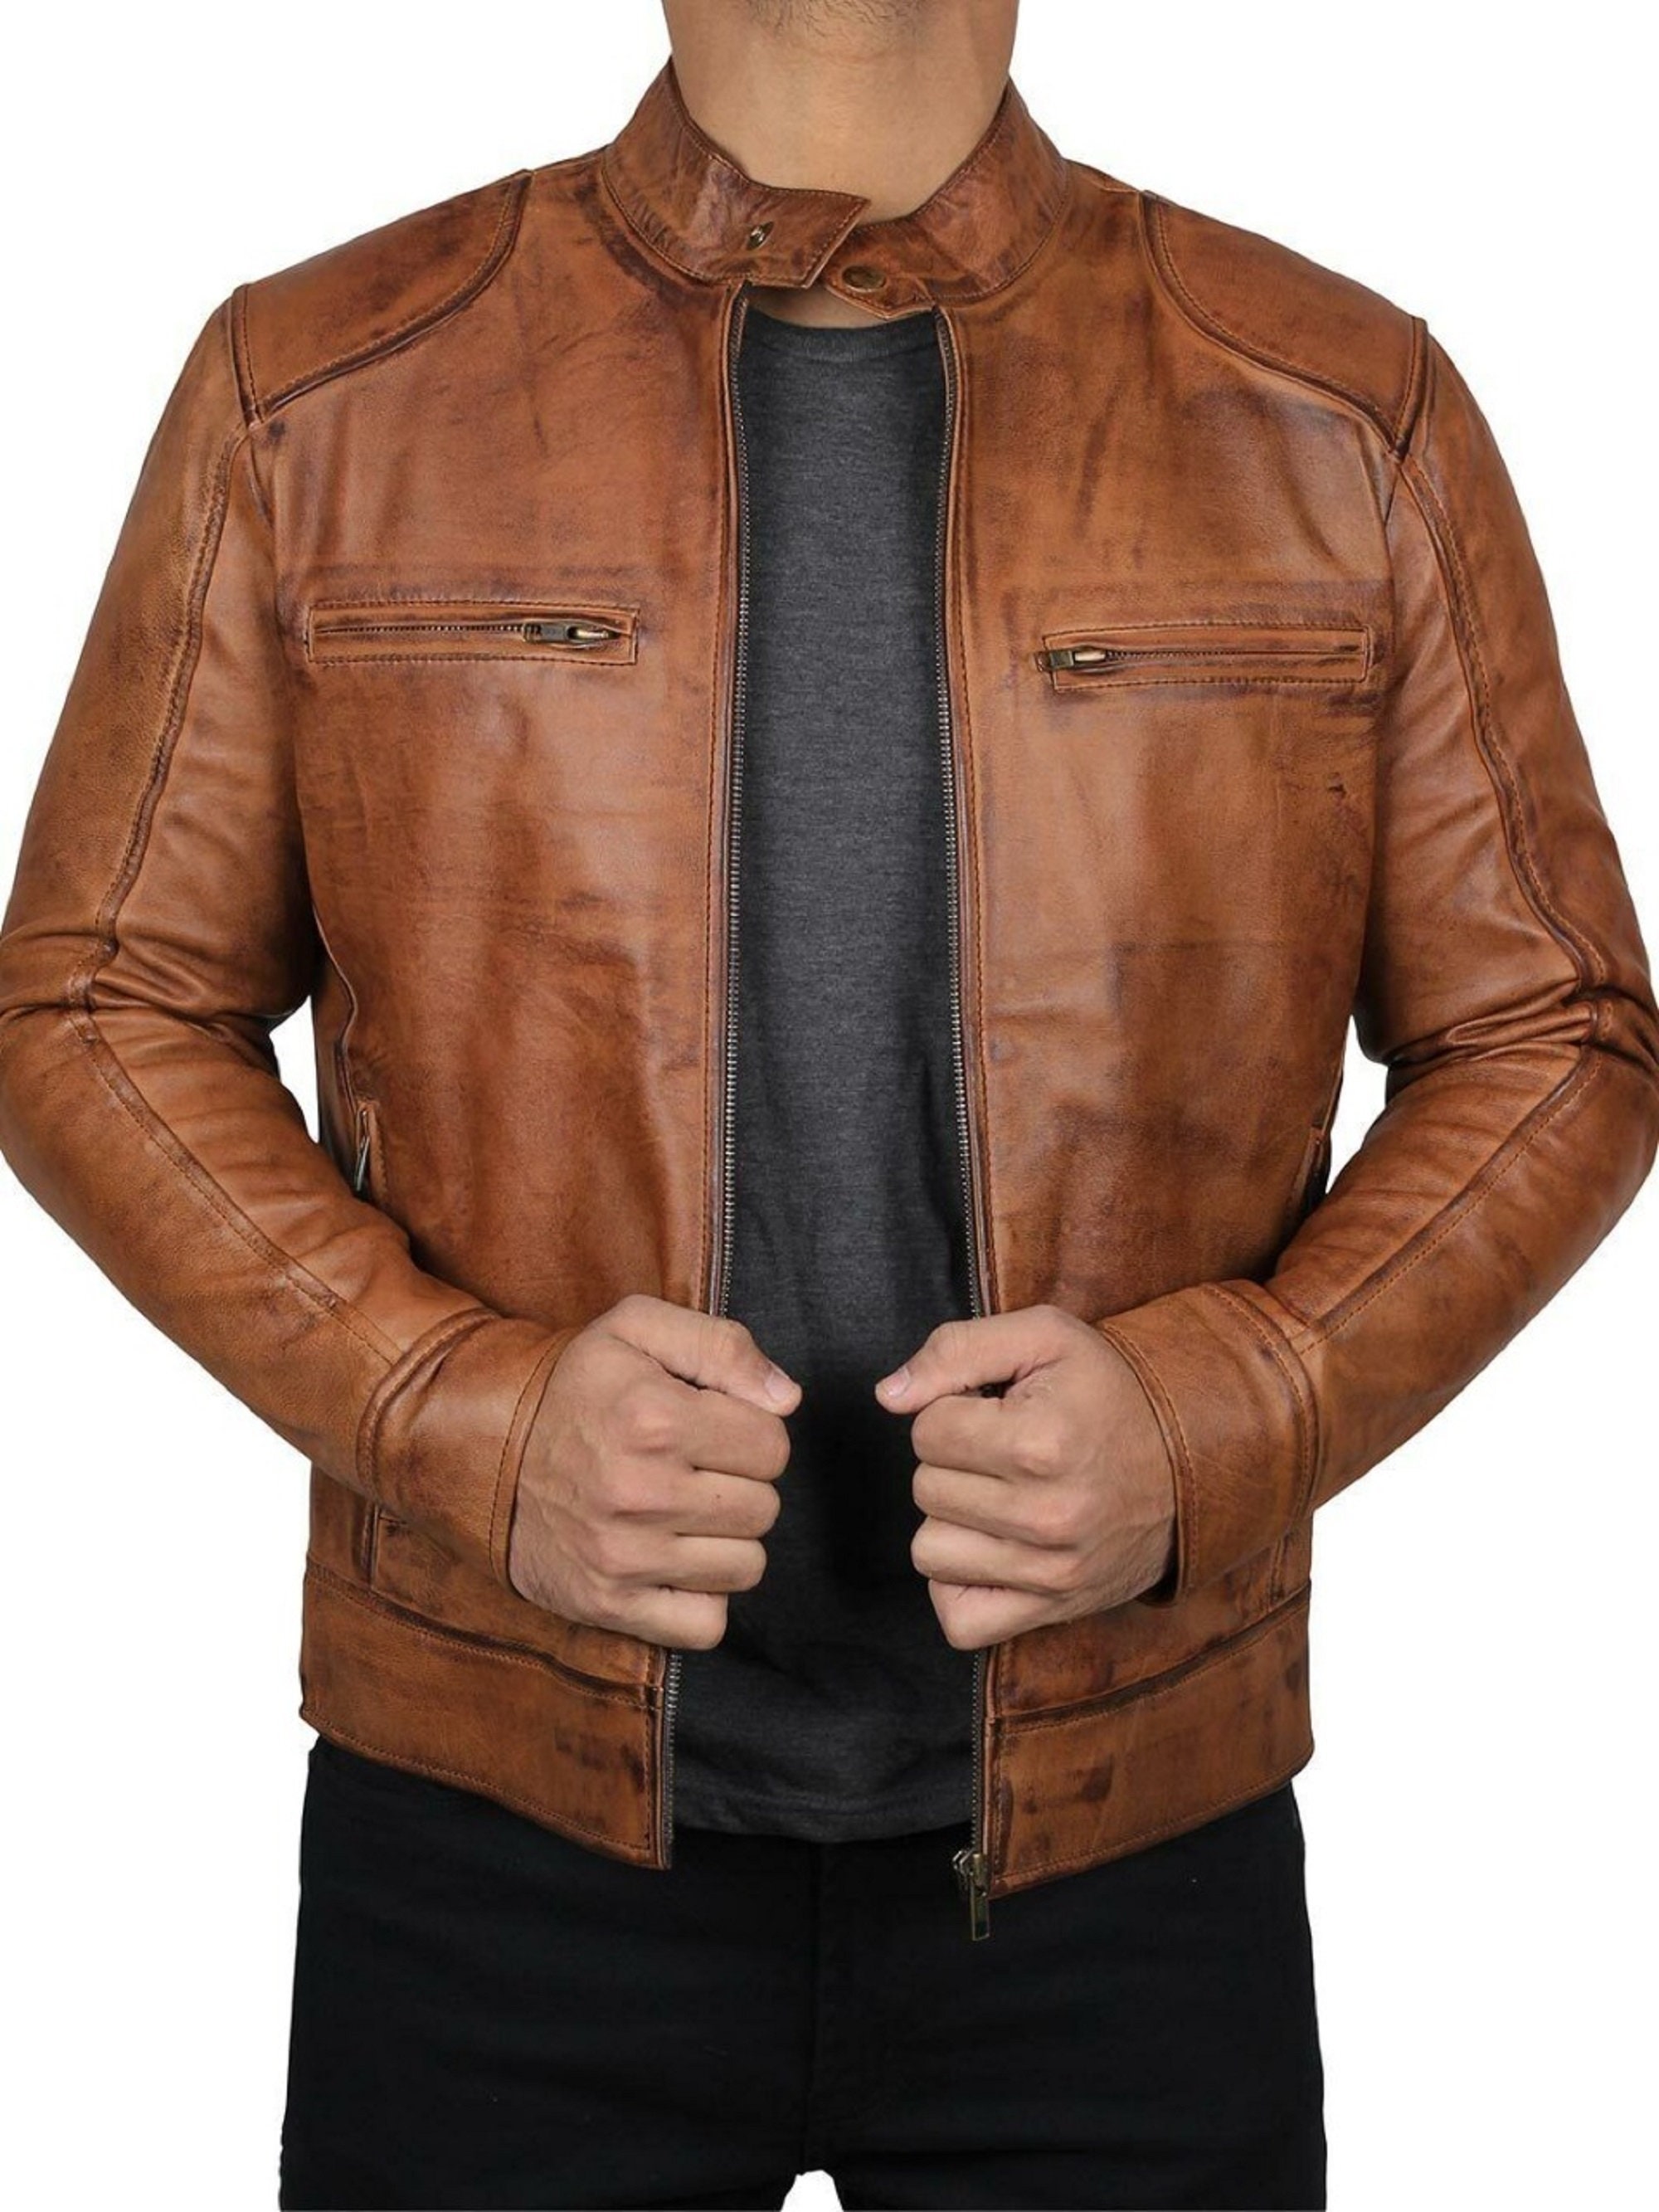 Men's Motorcycle Distressed Leather Jacket Brown Vintage - Etsy